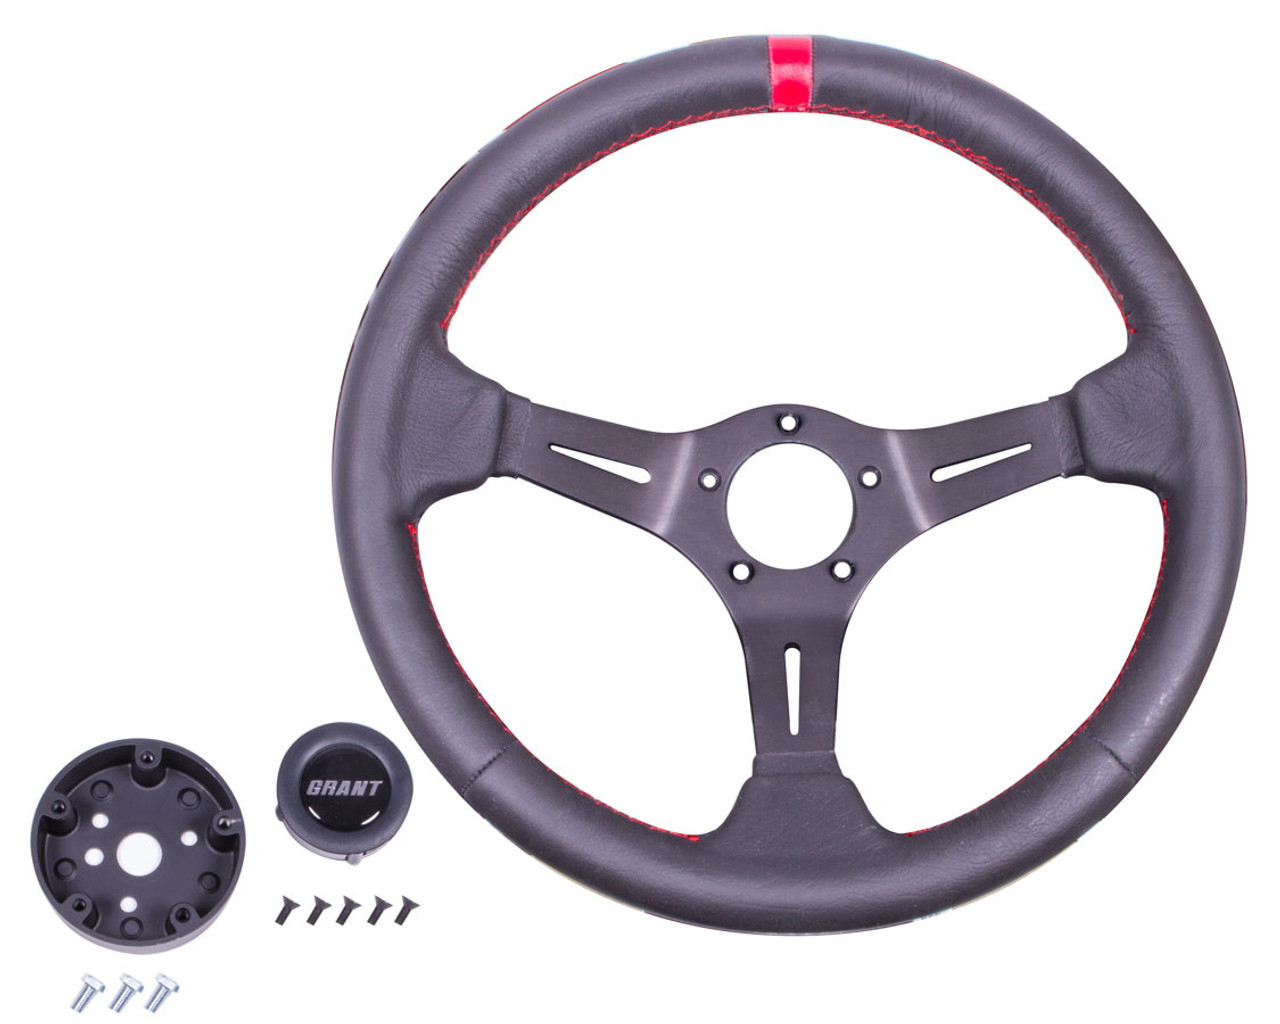 Grant Racing Wheel  - GRT692